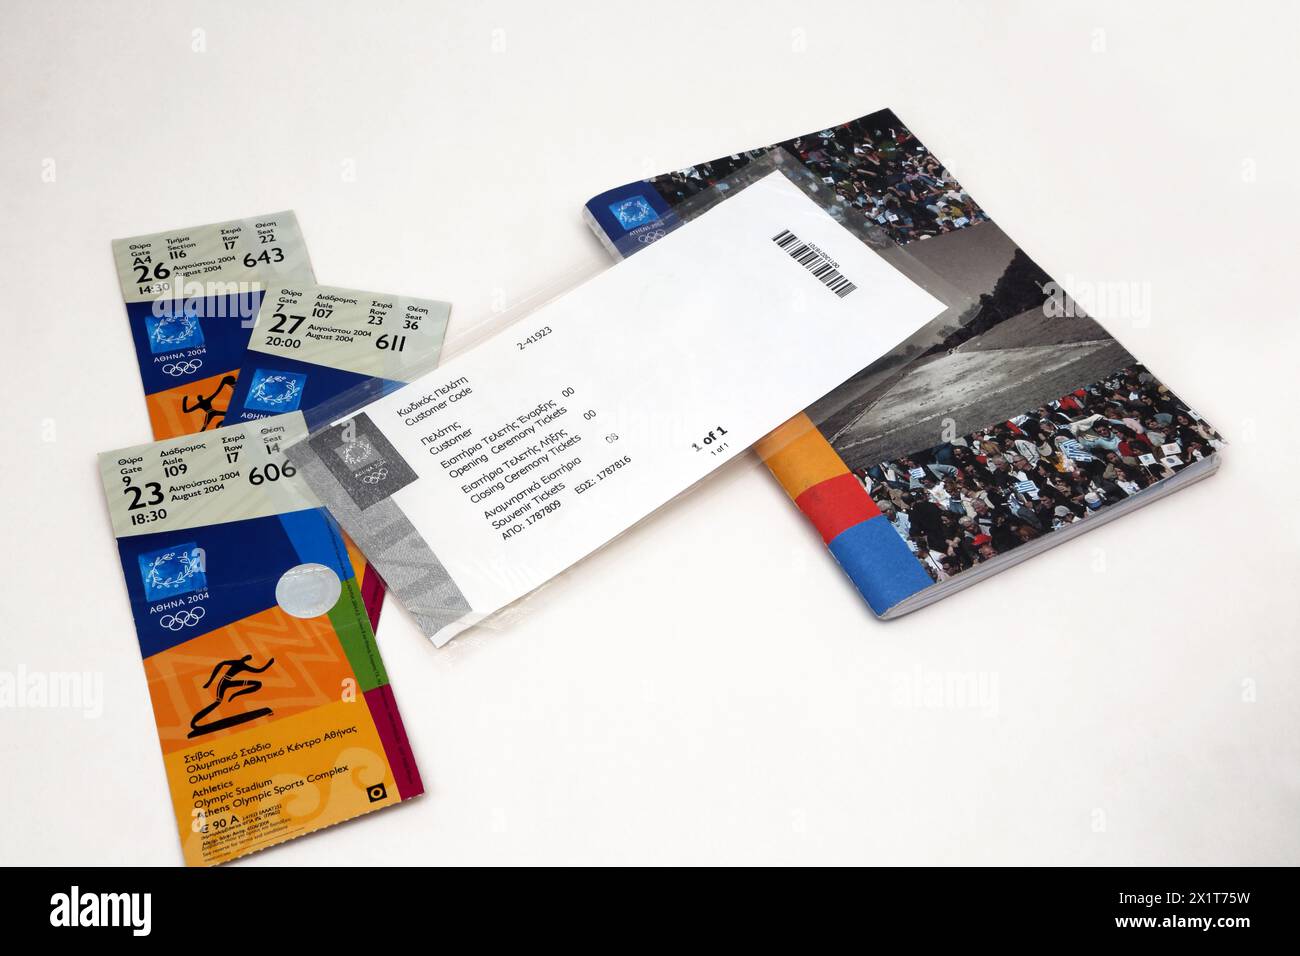 Biglietti e guida ufficiale per gli spettatori dello Stadion per le Olimpiadi estive di Atene 2004 Foto Stock